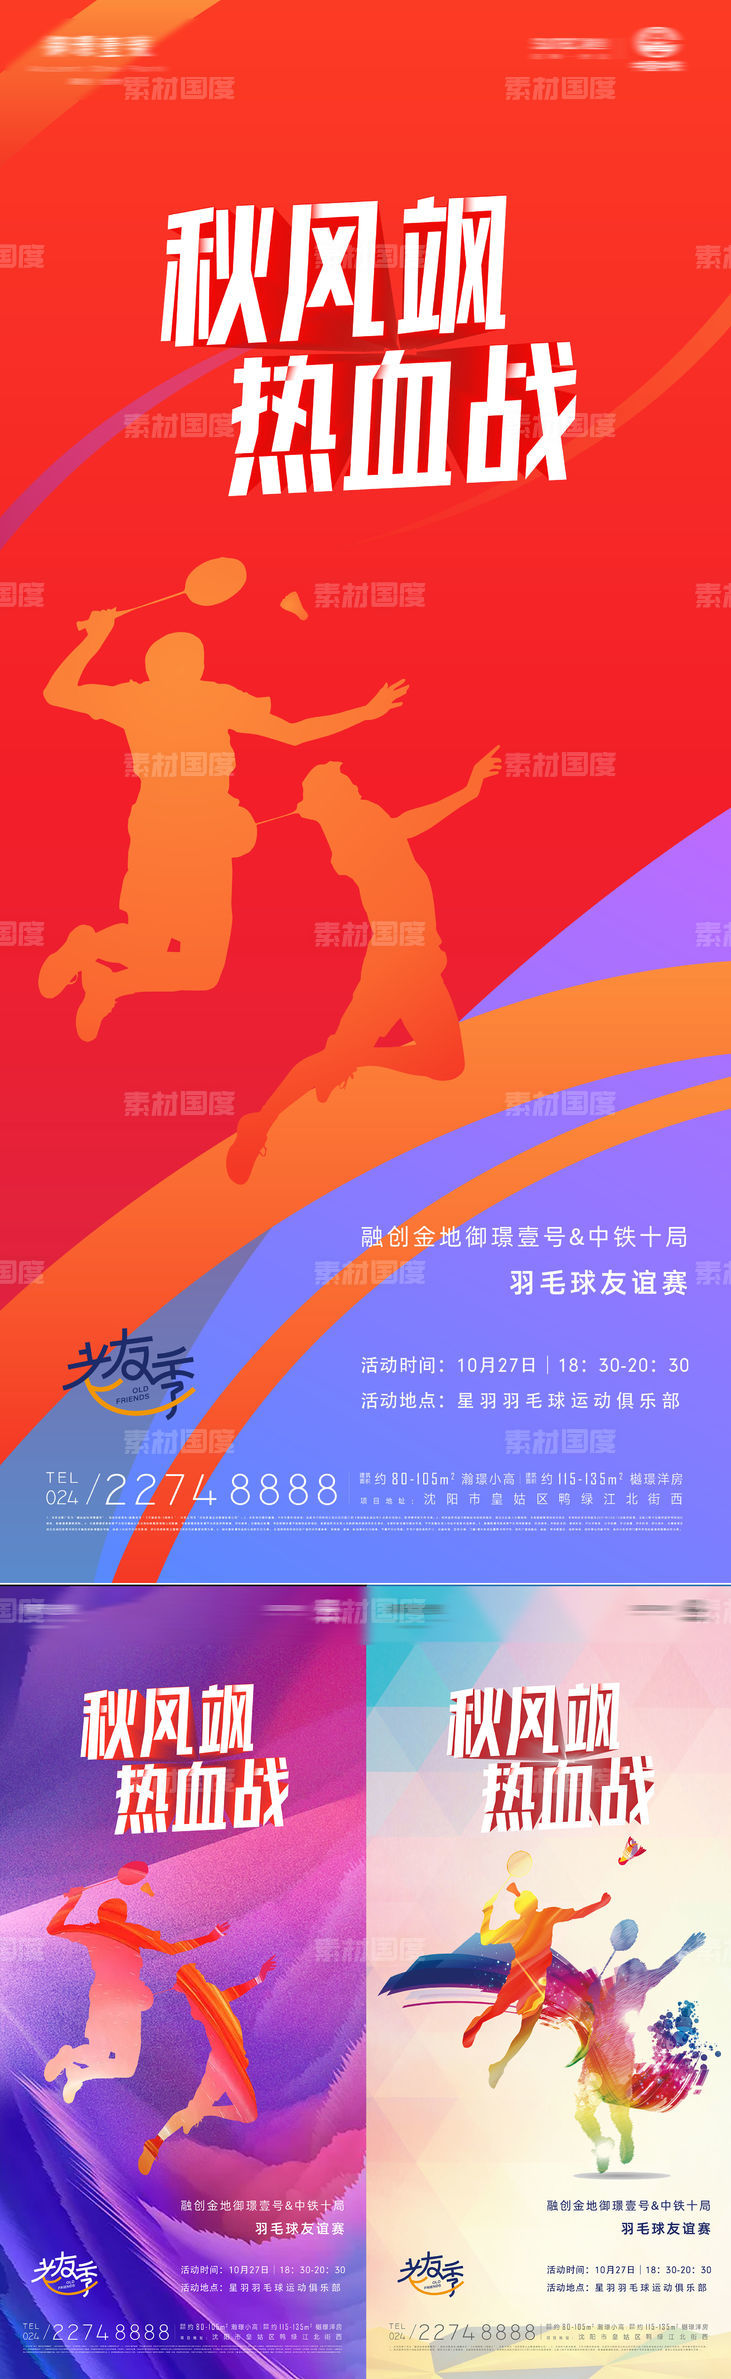 秋风飒热血战业主羽毛球比赛炫彩海报